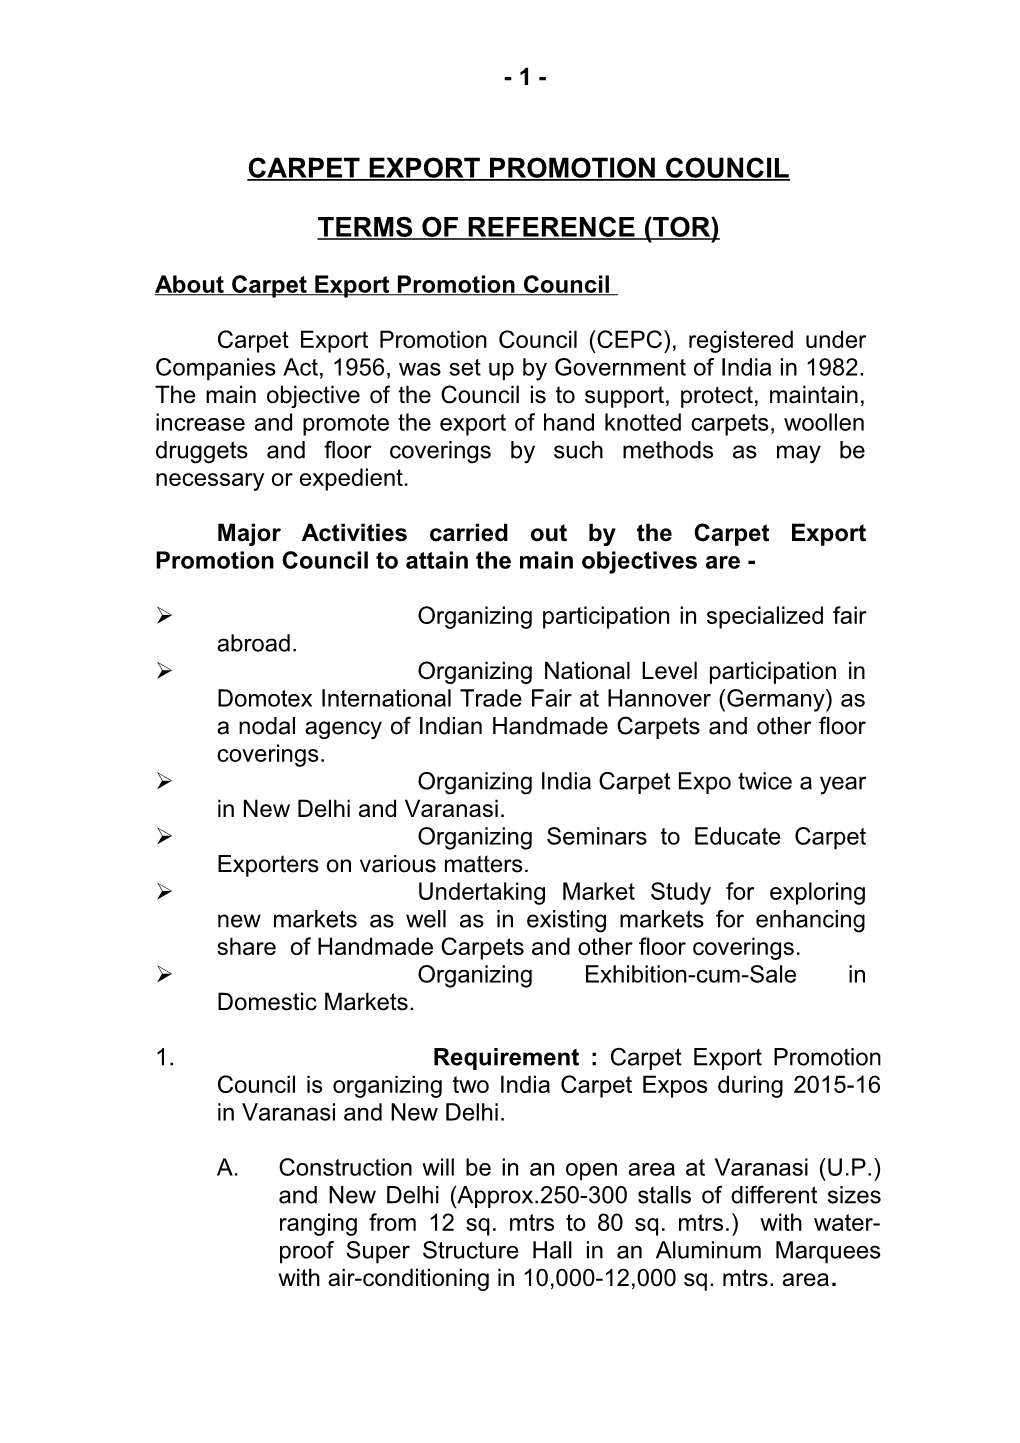 Carpet Export Promotion Council